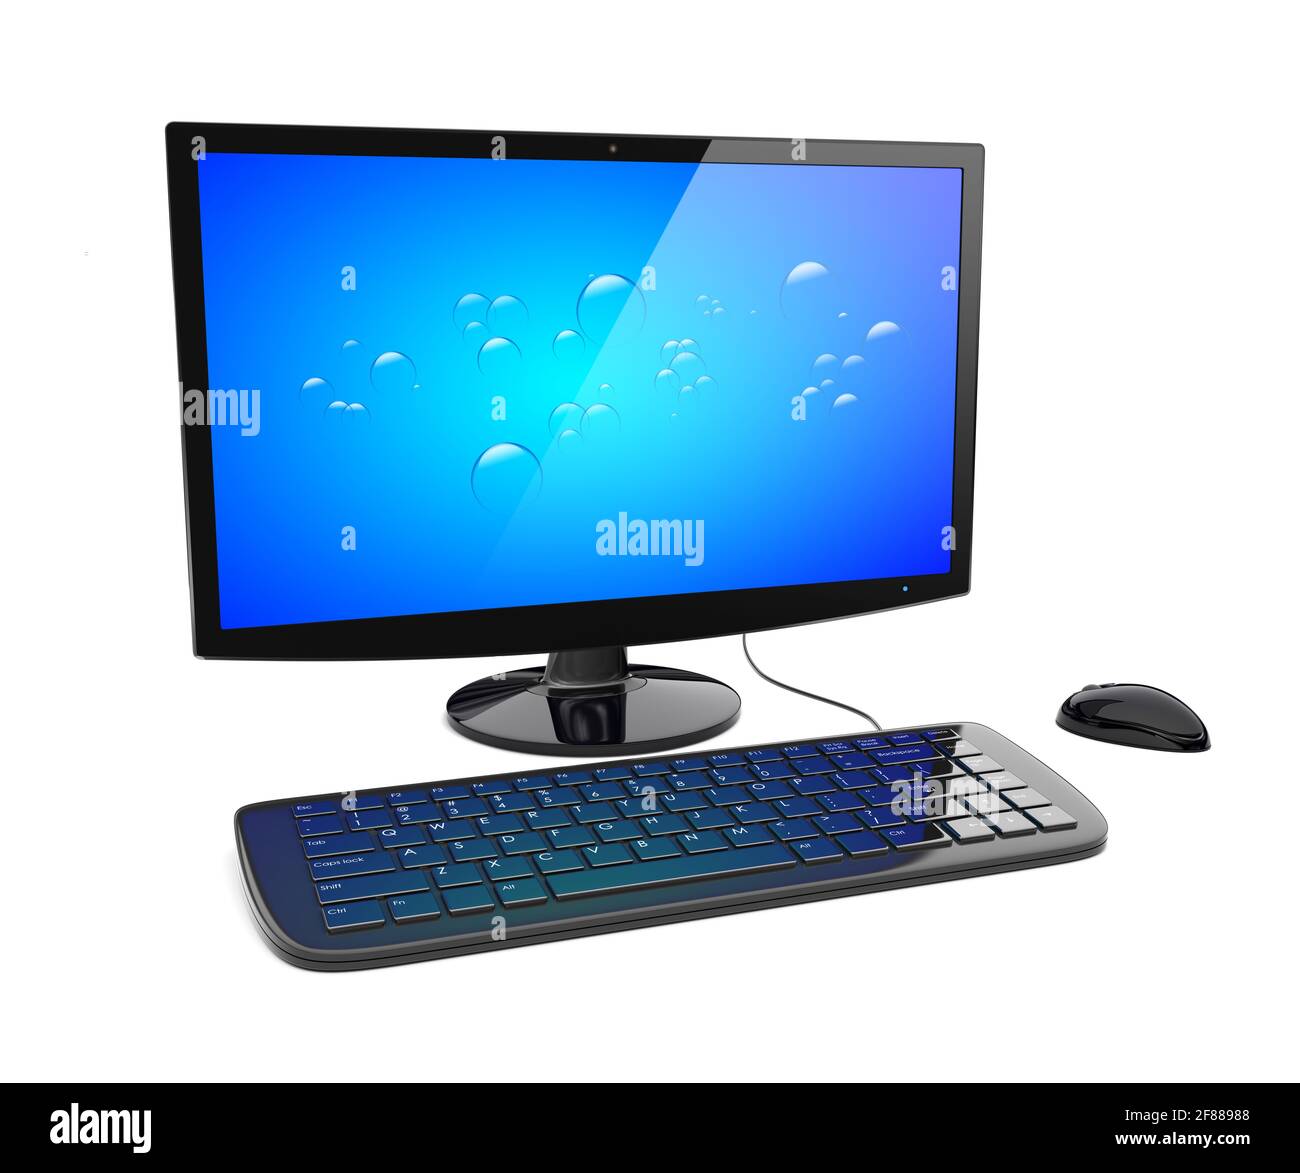 Schwarzer Desktop-pc mit Breitbildschirm, Tastatur und Maus sowie blauem Bildschirm. 3d-gerendertes Bild Stockfoto